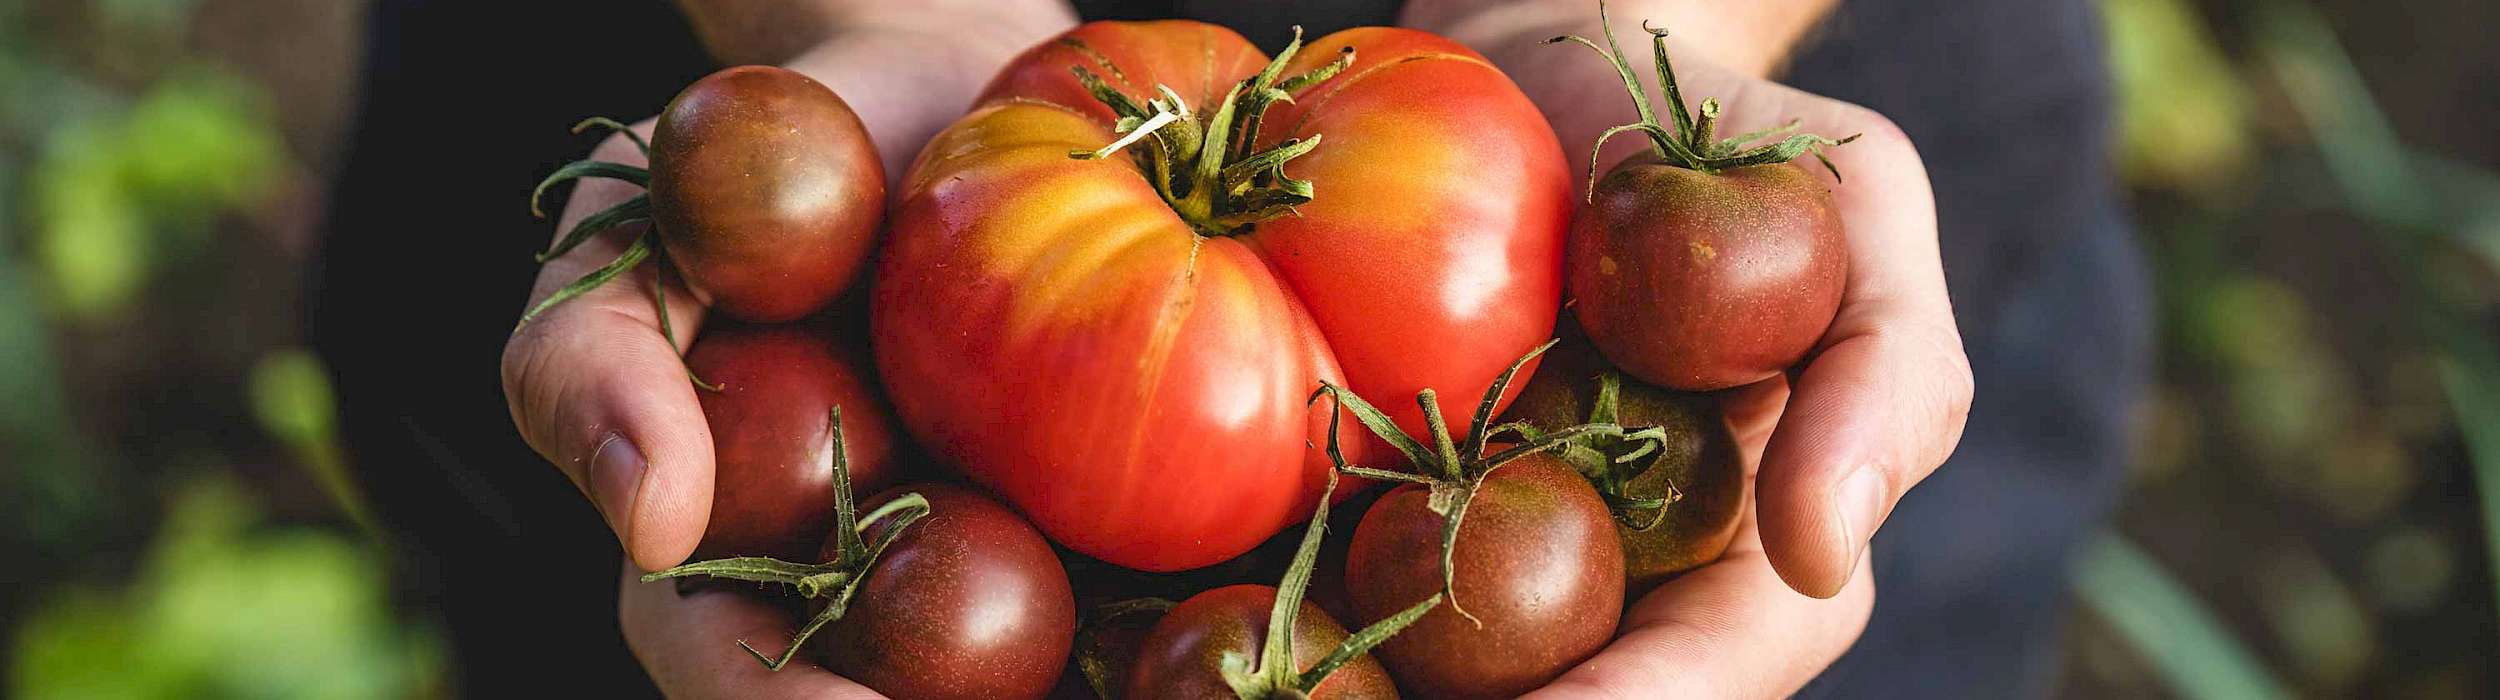 Hände mit reicher Tomatenernte